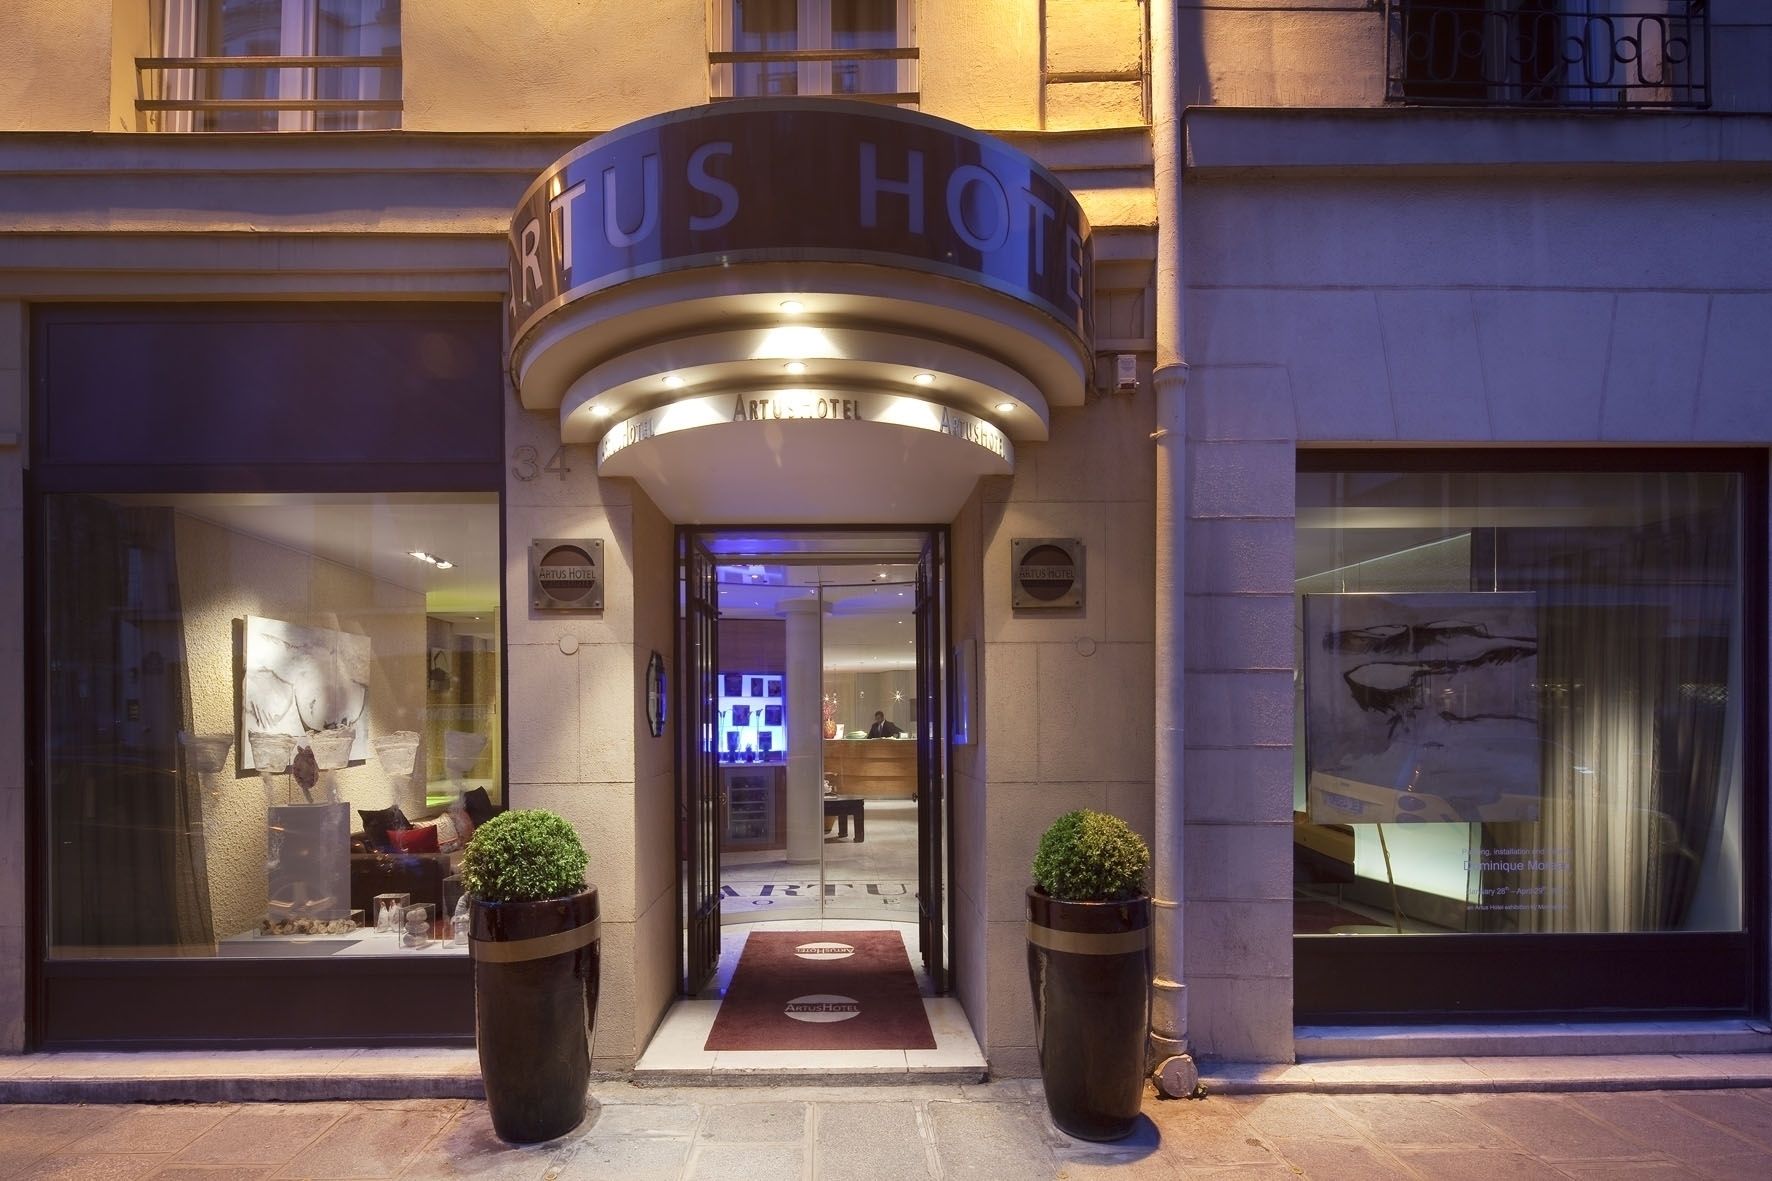 Artus Hotel Paris 6th arrondissement - Saint-Germain-des-Pres France thumbnail